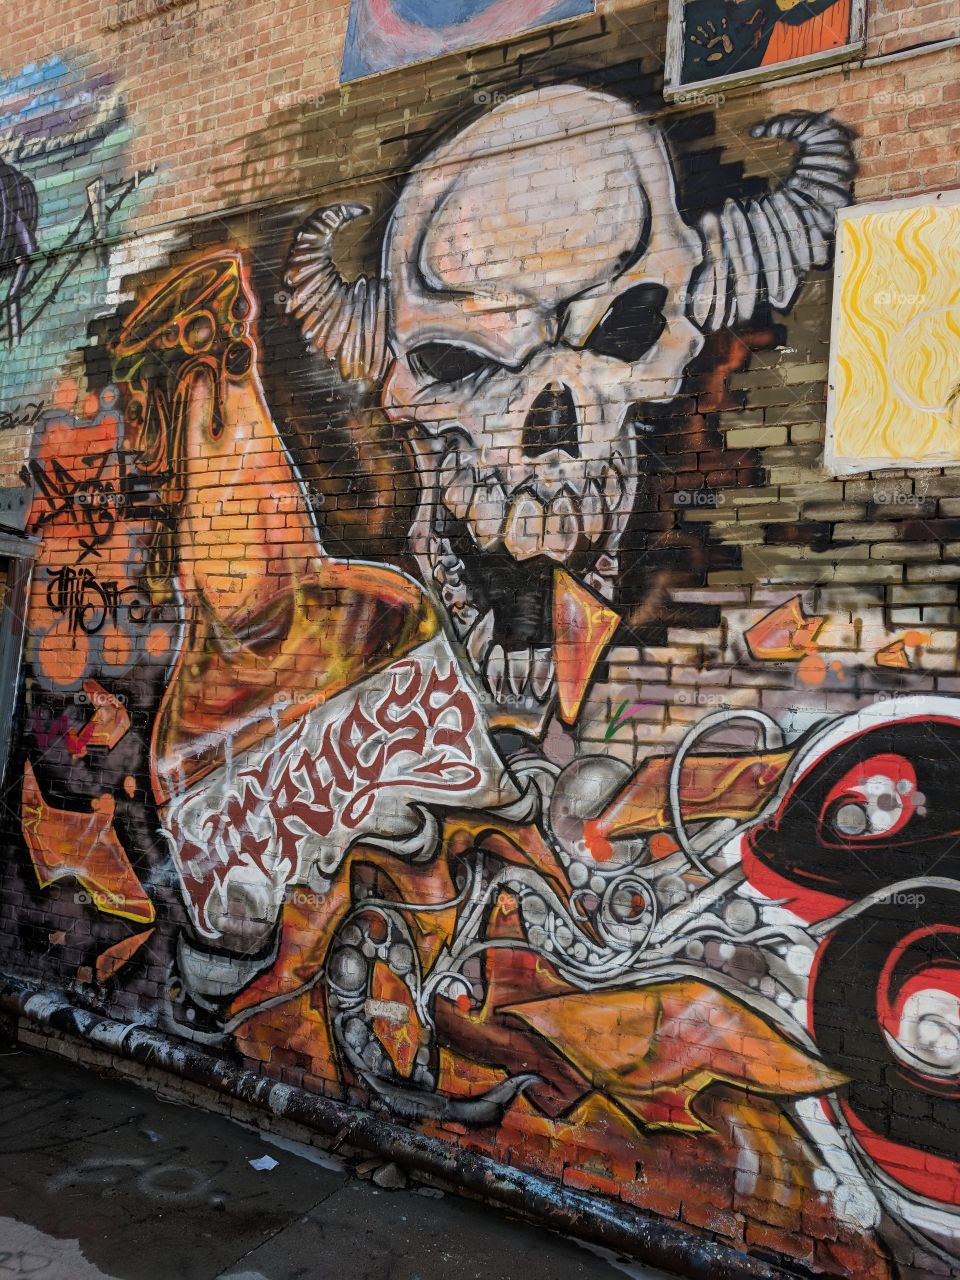 Art Alley in Rapid City, South Dakota. Street Art in the famous alley.